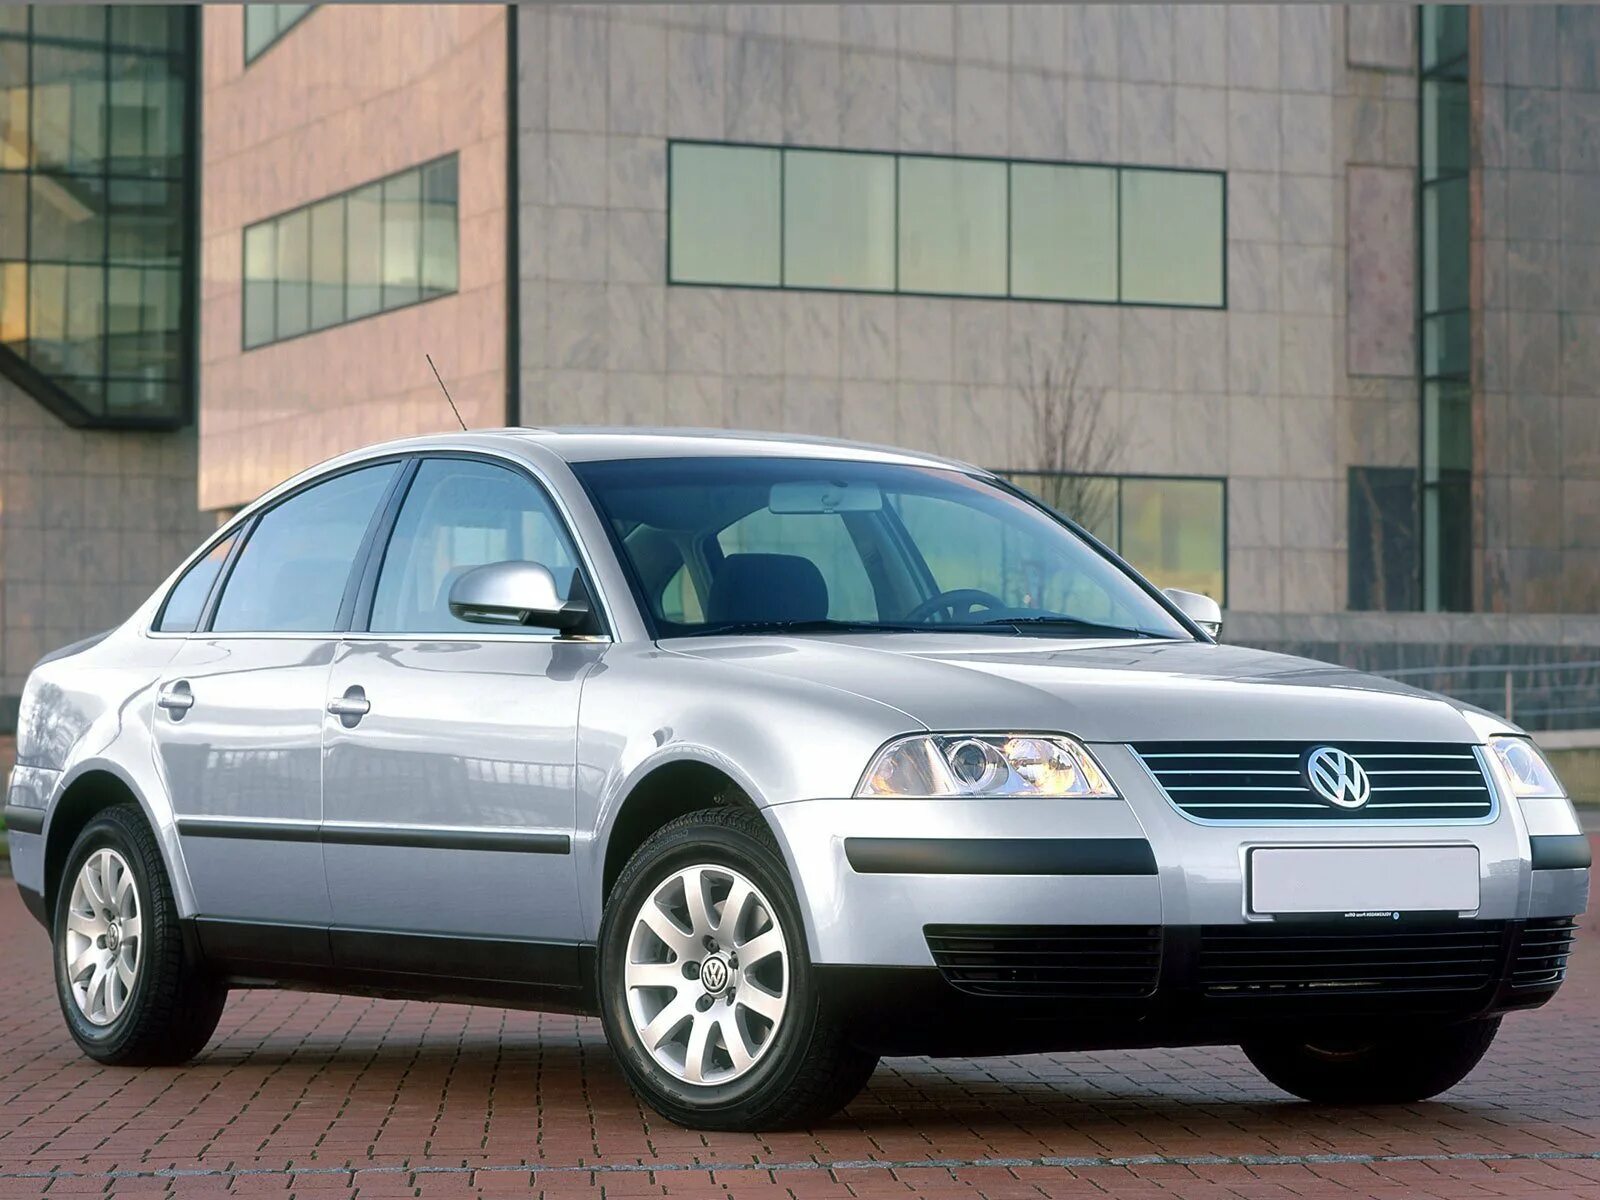 Фольксваген Пассат b5. Volkswagen Passat b5 седан. Фольксваген Пассат седан 2005. Фольксваген Пассат в5 Рестайлинг.